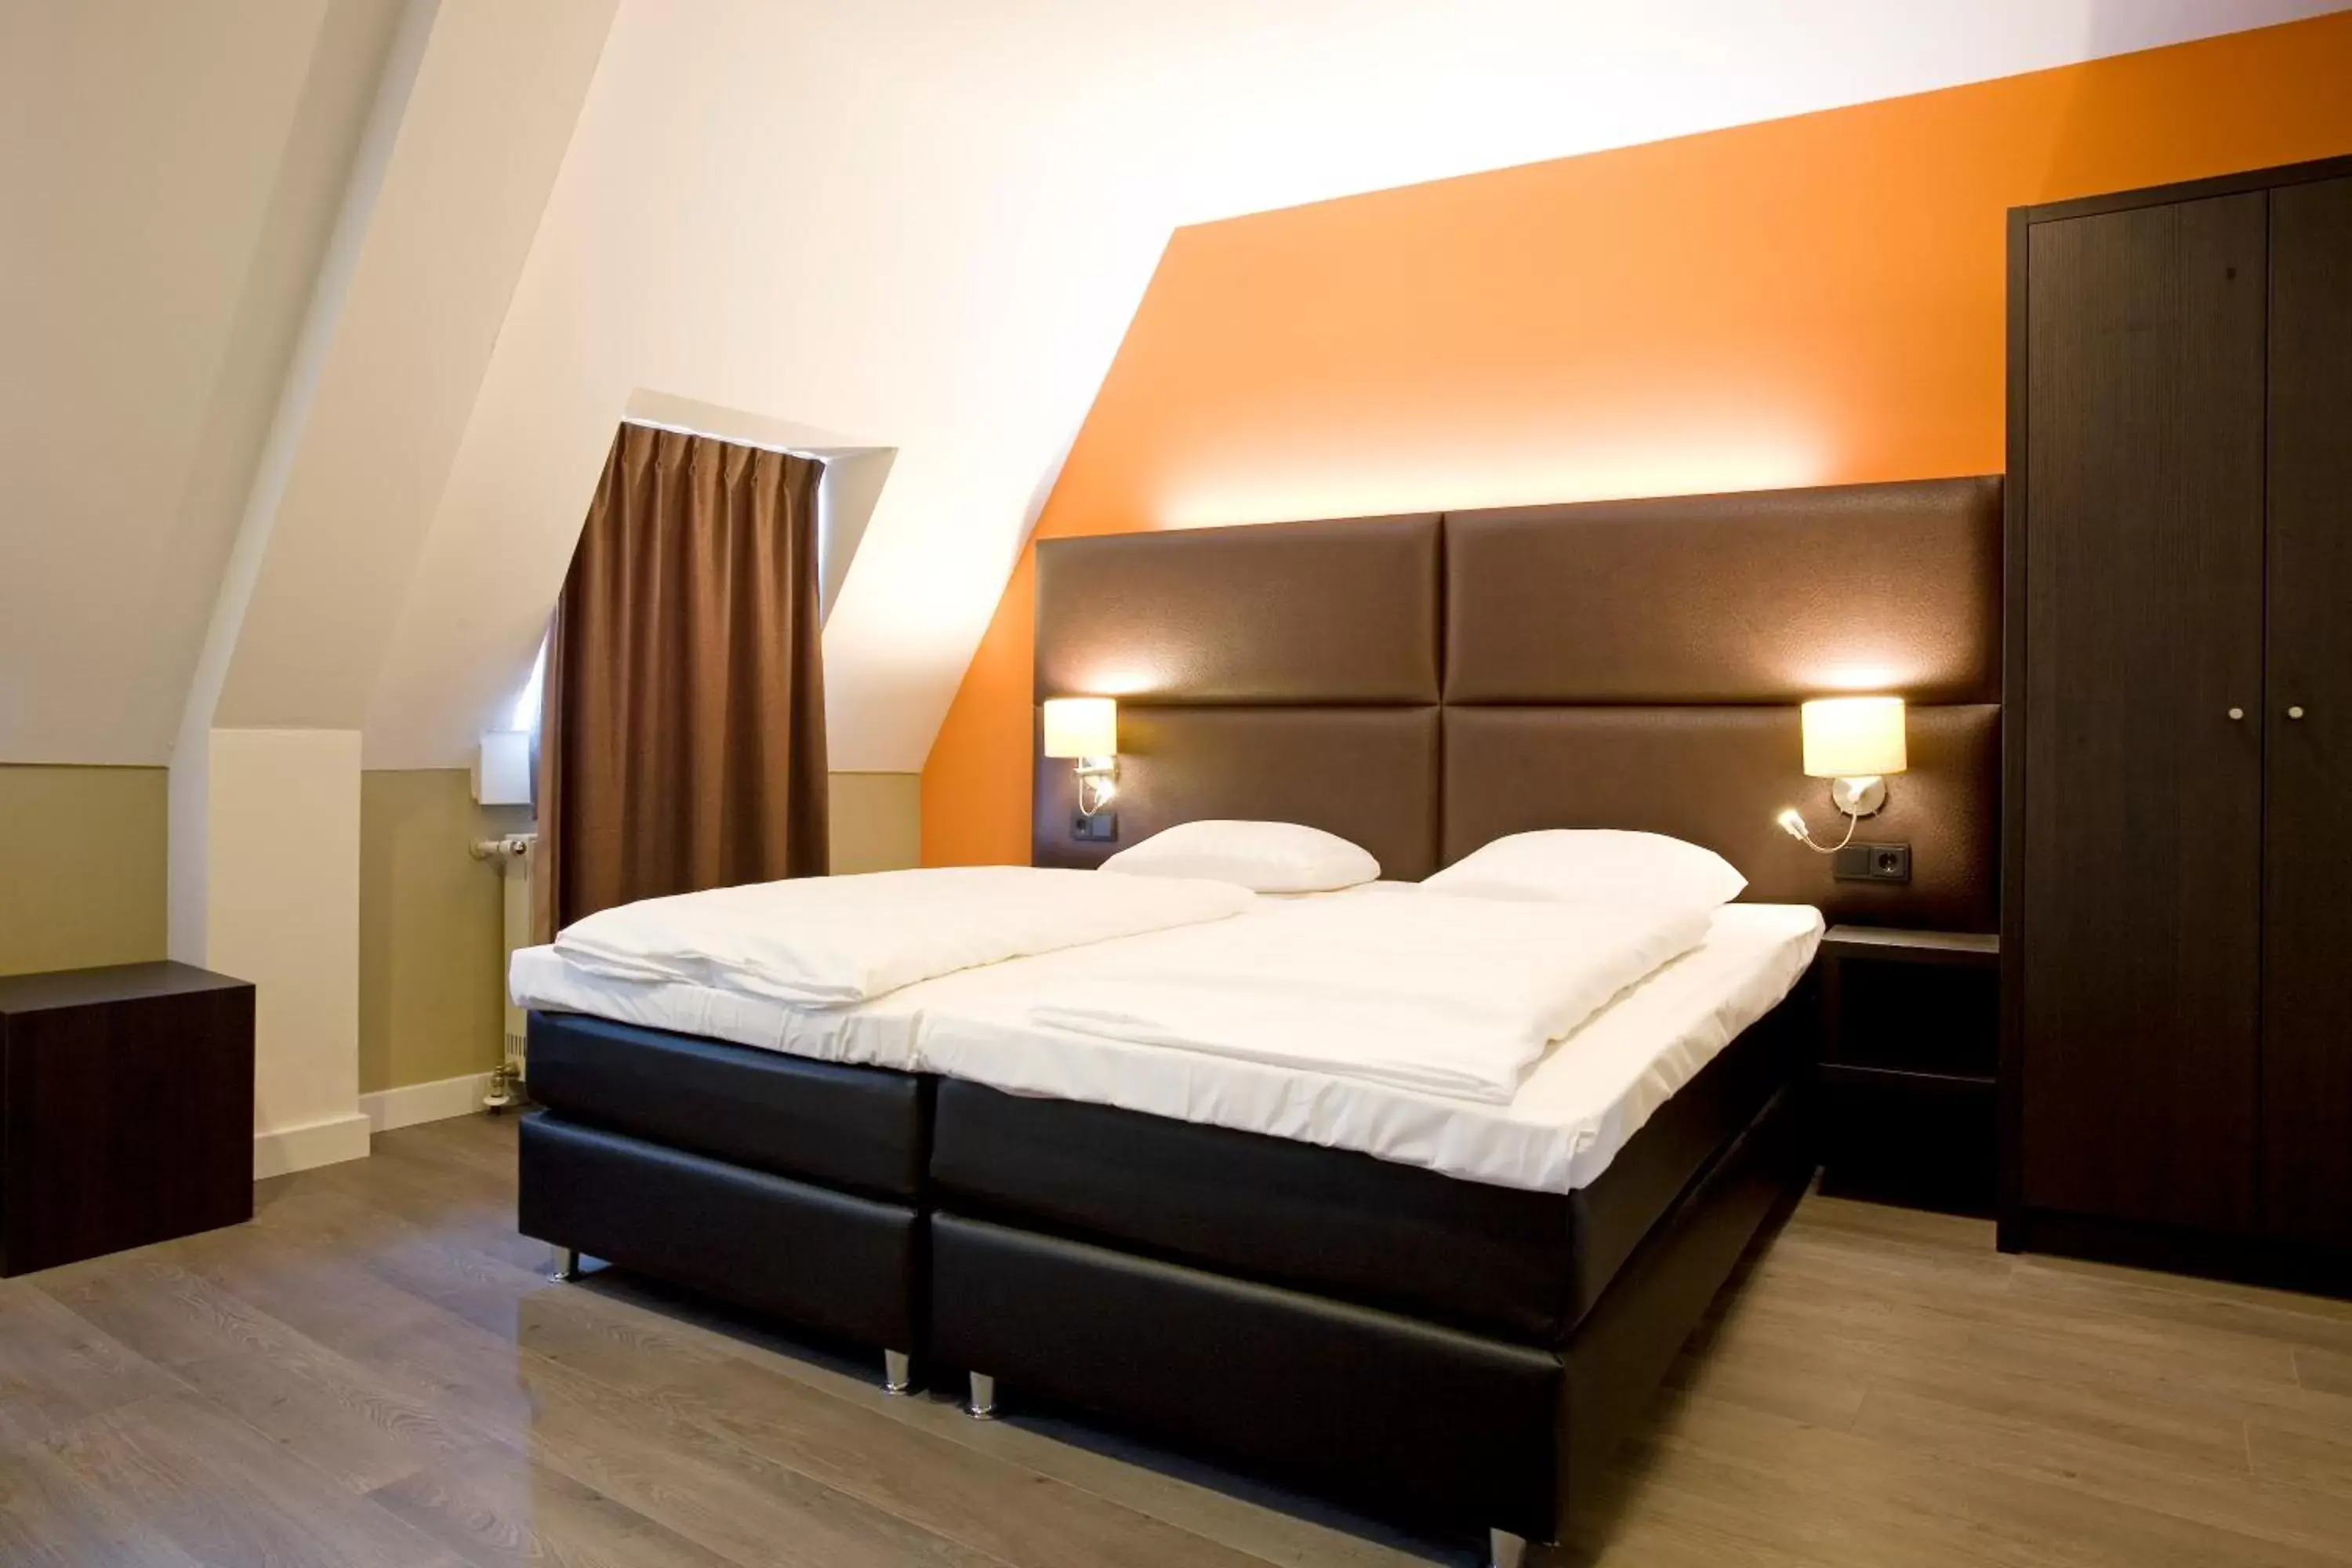 Bed in Hotel Roermond Next Door